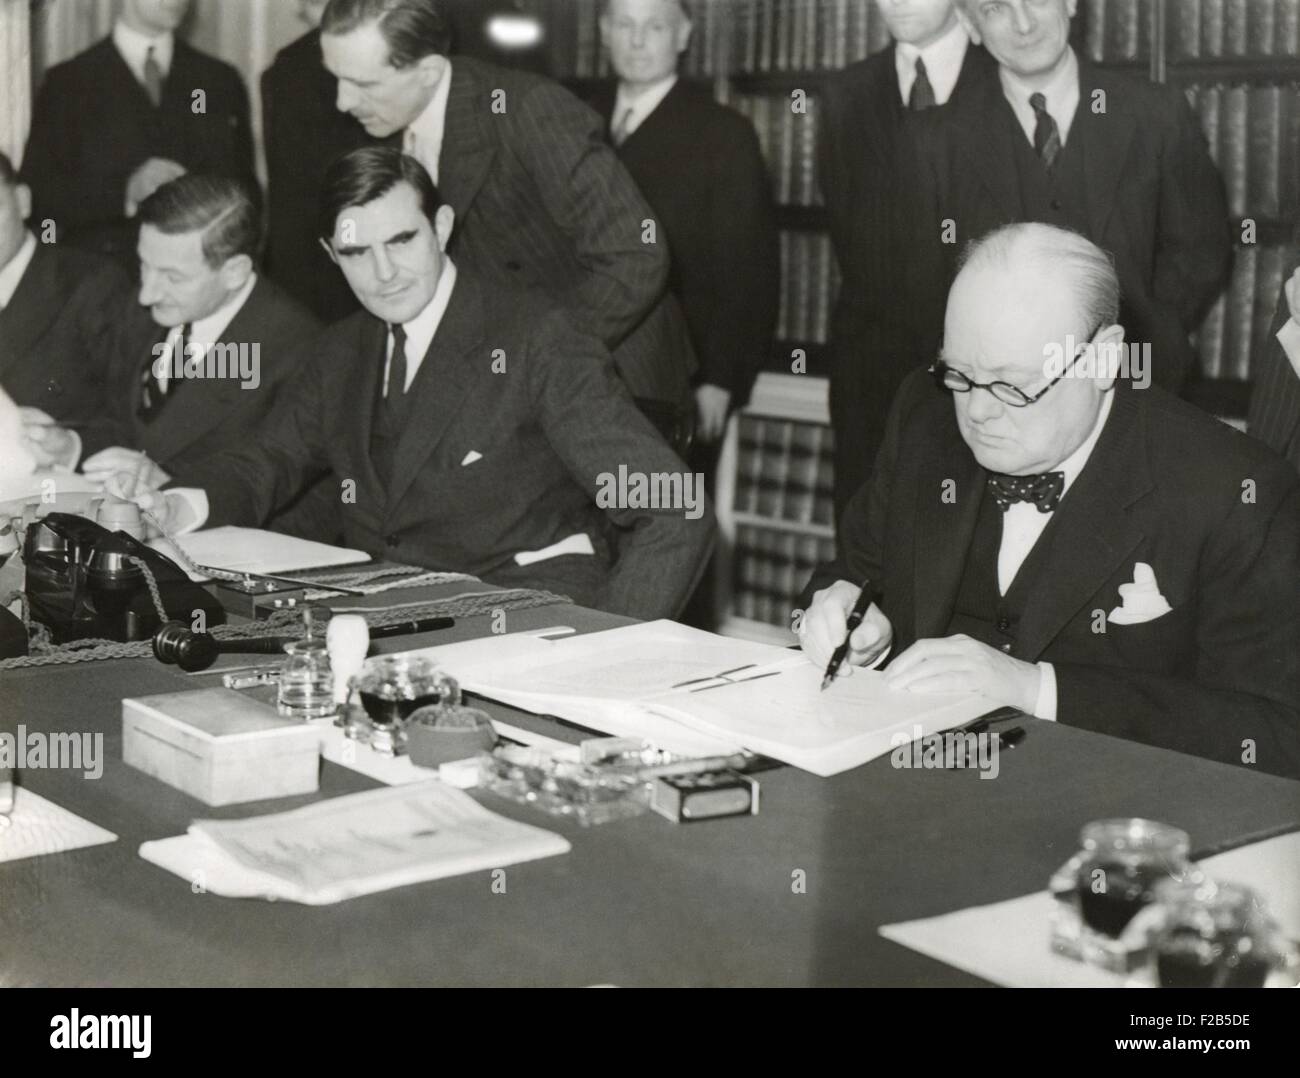 Winston Churchill der "Lend Lease" Unterzeichnung zu verpachten British Basen 11. März 1941 in die USA. Unterzeichnen Sie von seinem Schreibtisch in 10 Downing Street Churchill und US-Botschafter, John G. Winant, "Ein Gesetz zur weiteren Förderung der Verteidigung der Vereinigten Staaten". -(BSLOC 2014 17 35) Stockfoto